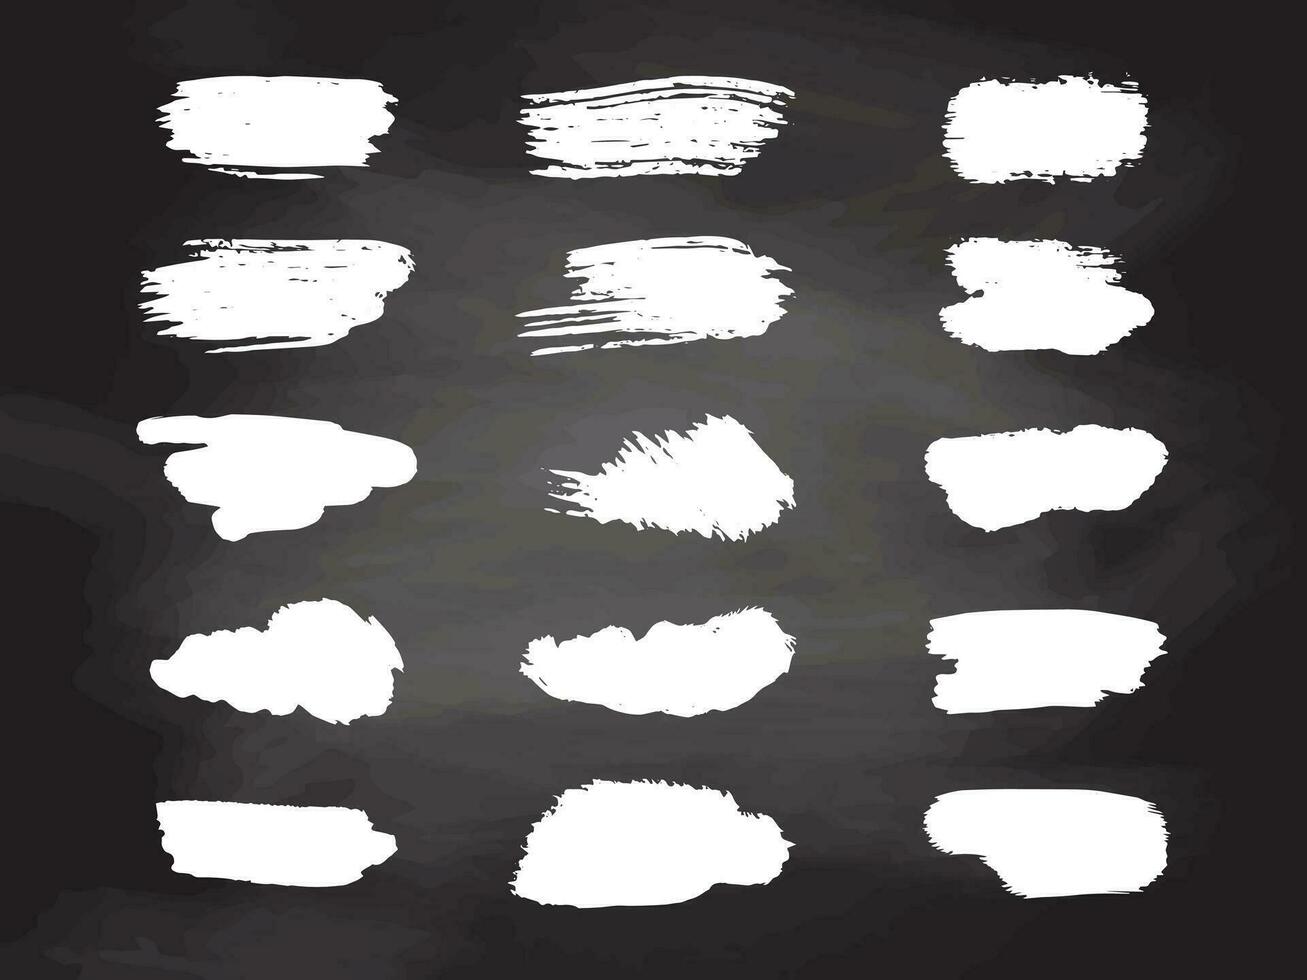 grunge branco escova golpes, pintura rolo elementos em quadro-negro fundo. conjunto do mão desenhado vetor tinta respingo elementos.